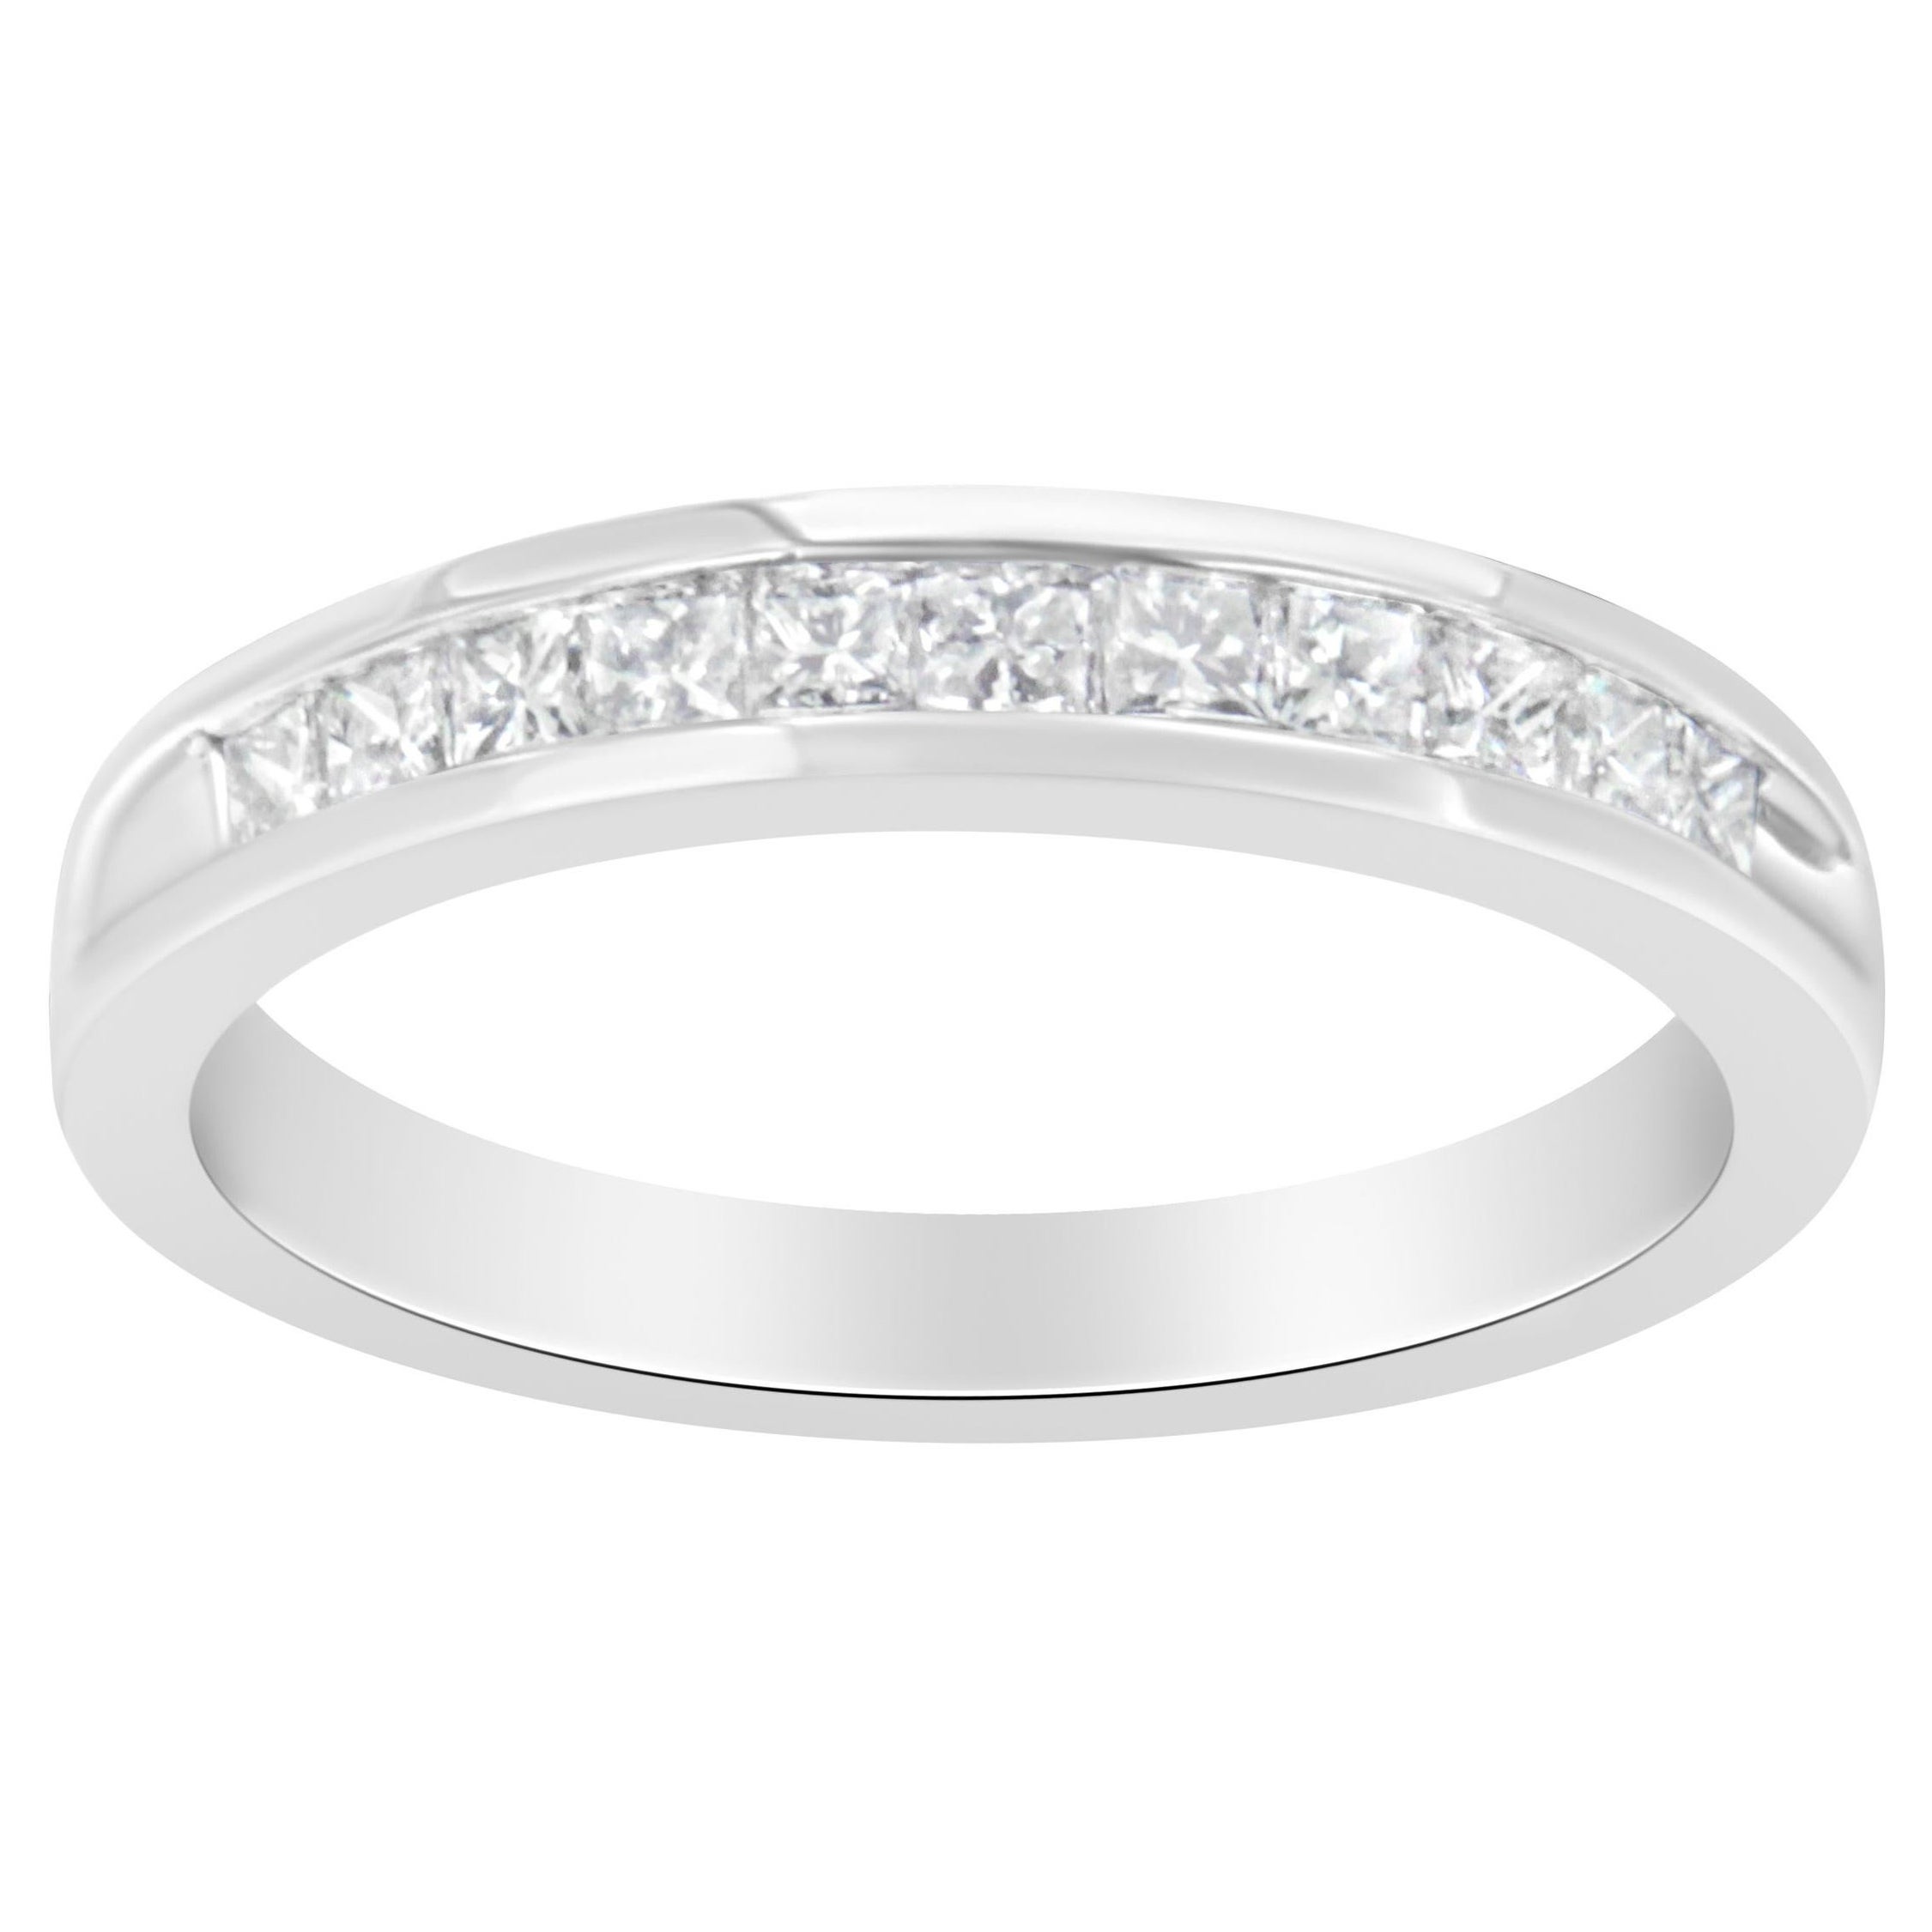 IGI Certified 18K White Gold 1/2 Carat Diamond Wedding Band Ring